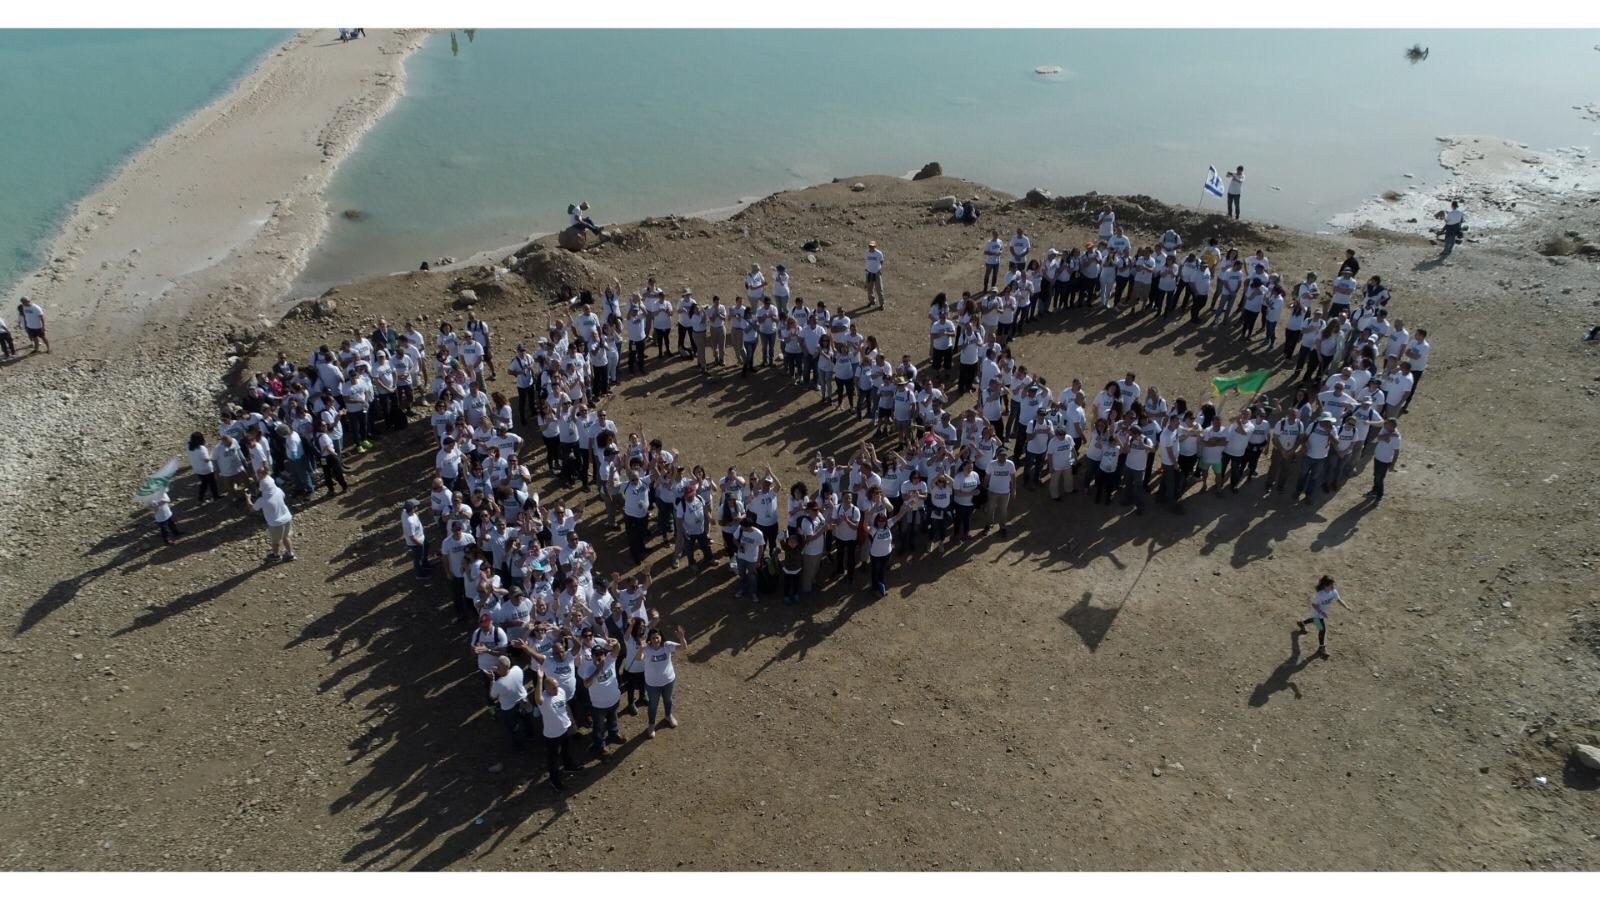 צופים נמוך: מאות מתנדבי תנועת הצופים מרחבי הארץ במיצג מרשים על חופי ים המלח לכבוד שנת המאה של התנועה